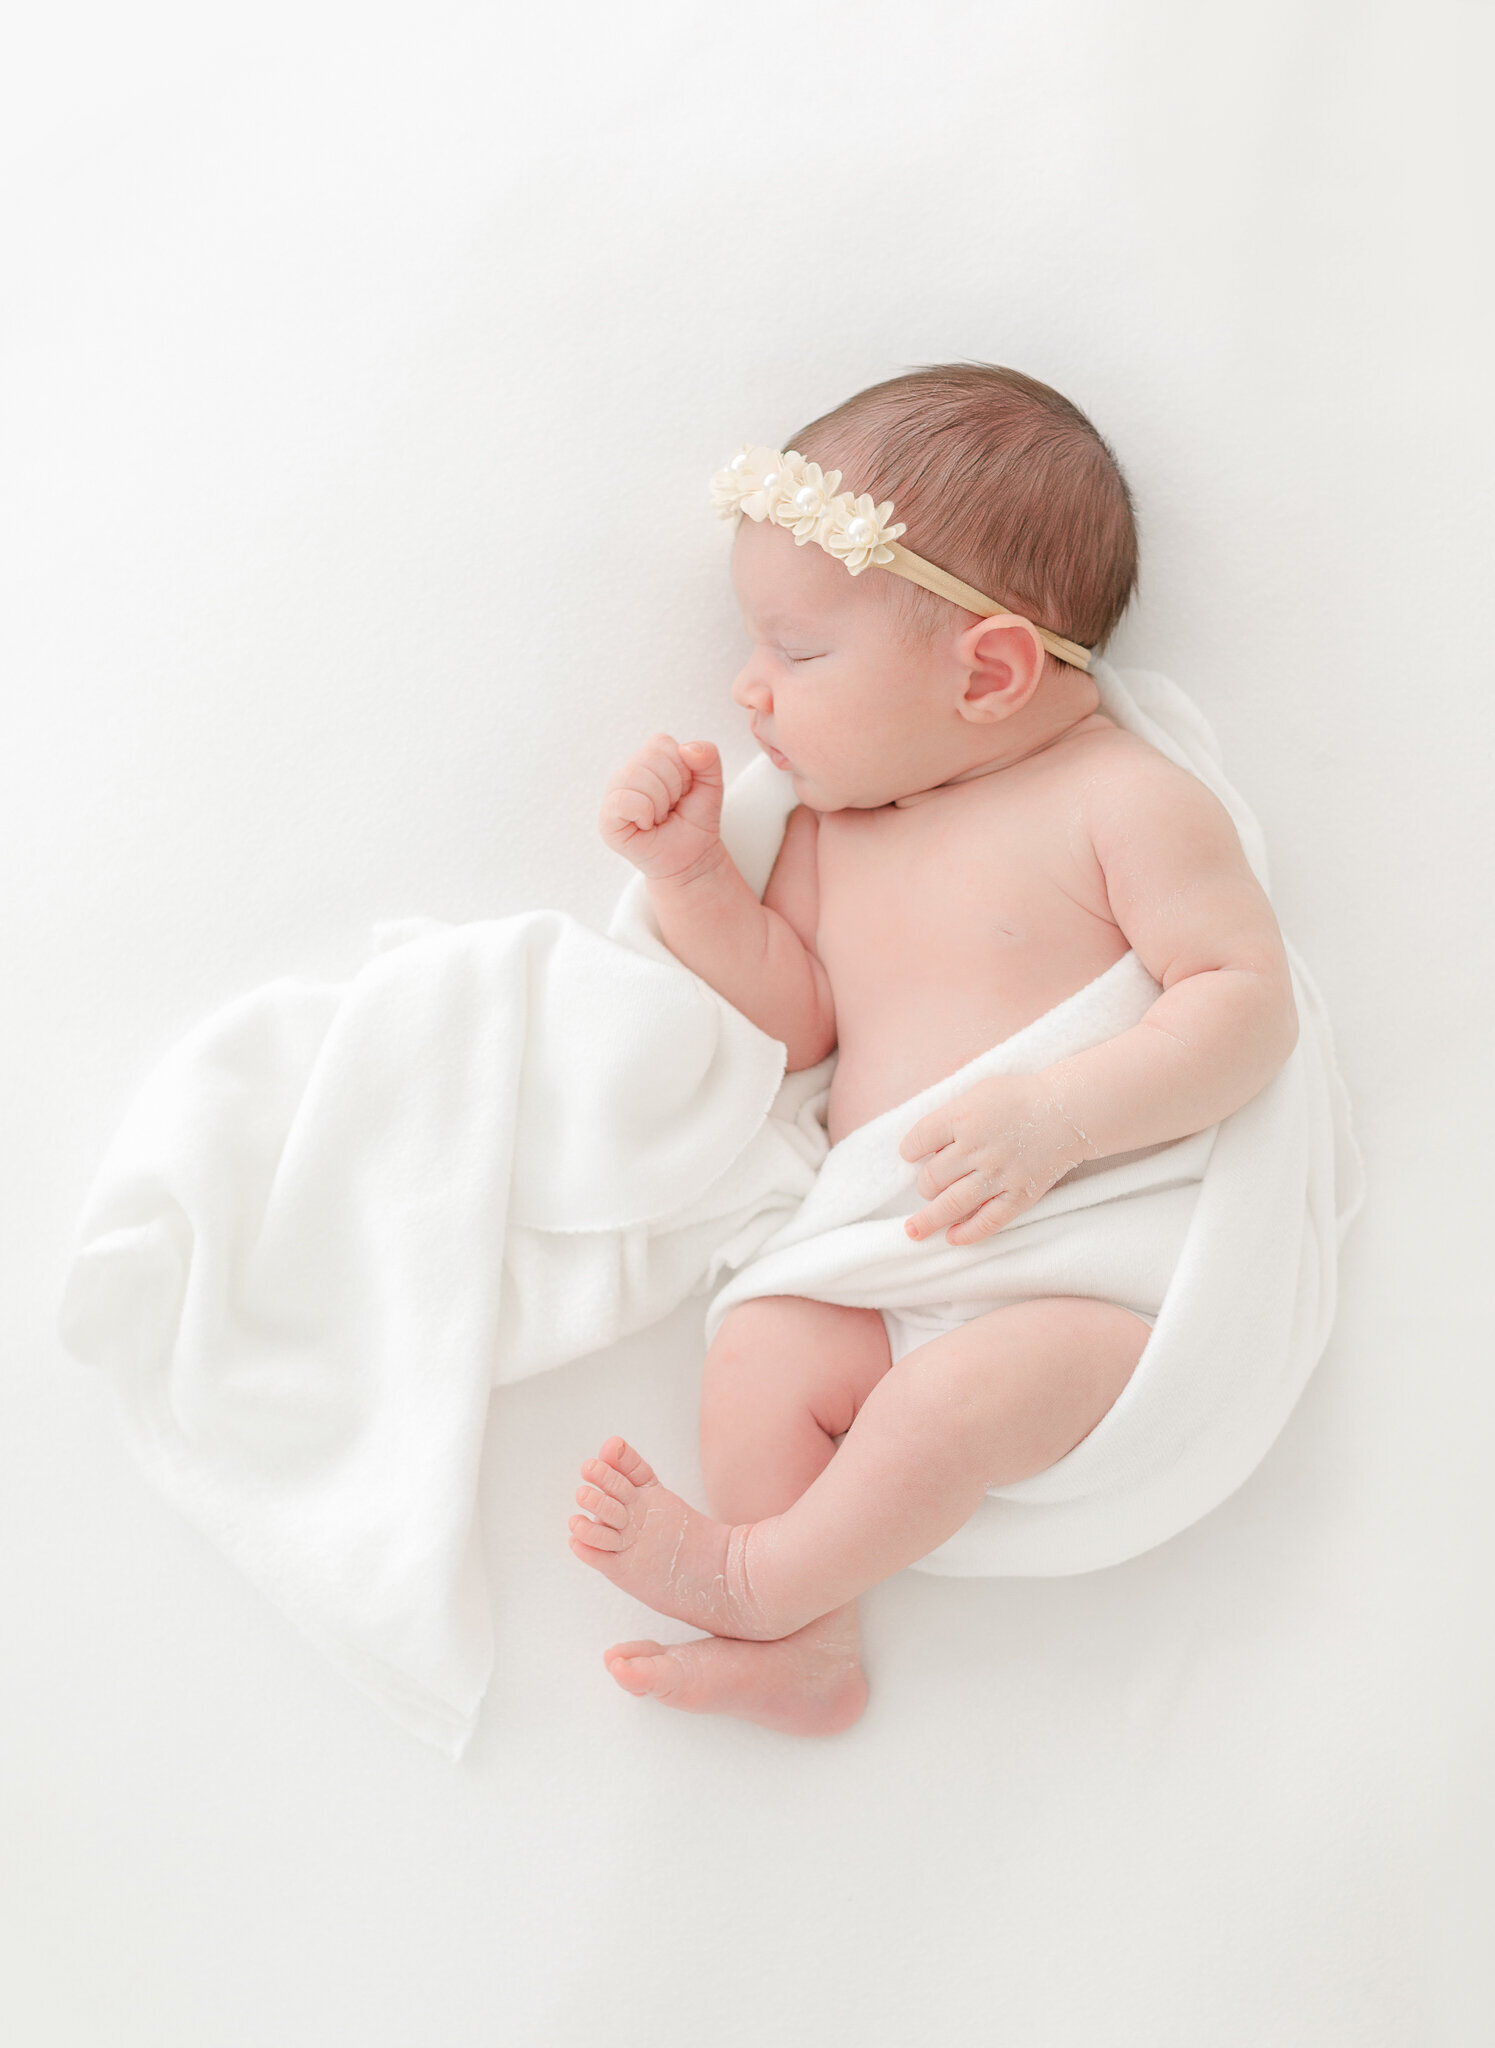 sleeping newborn baby girl wearing headband during massachusetts newborn photography session